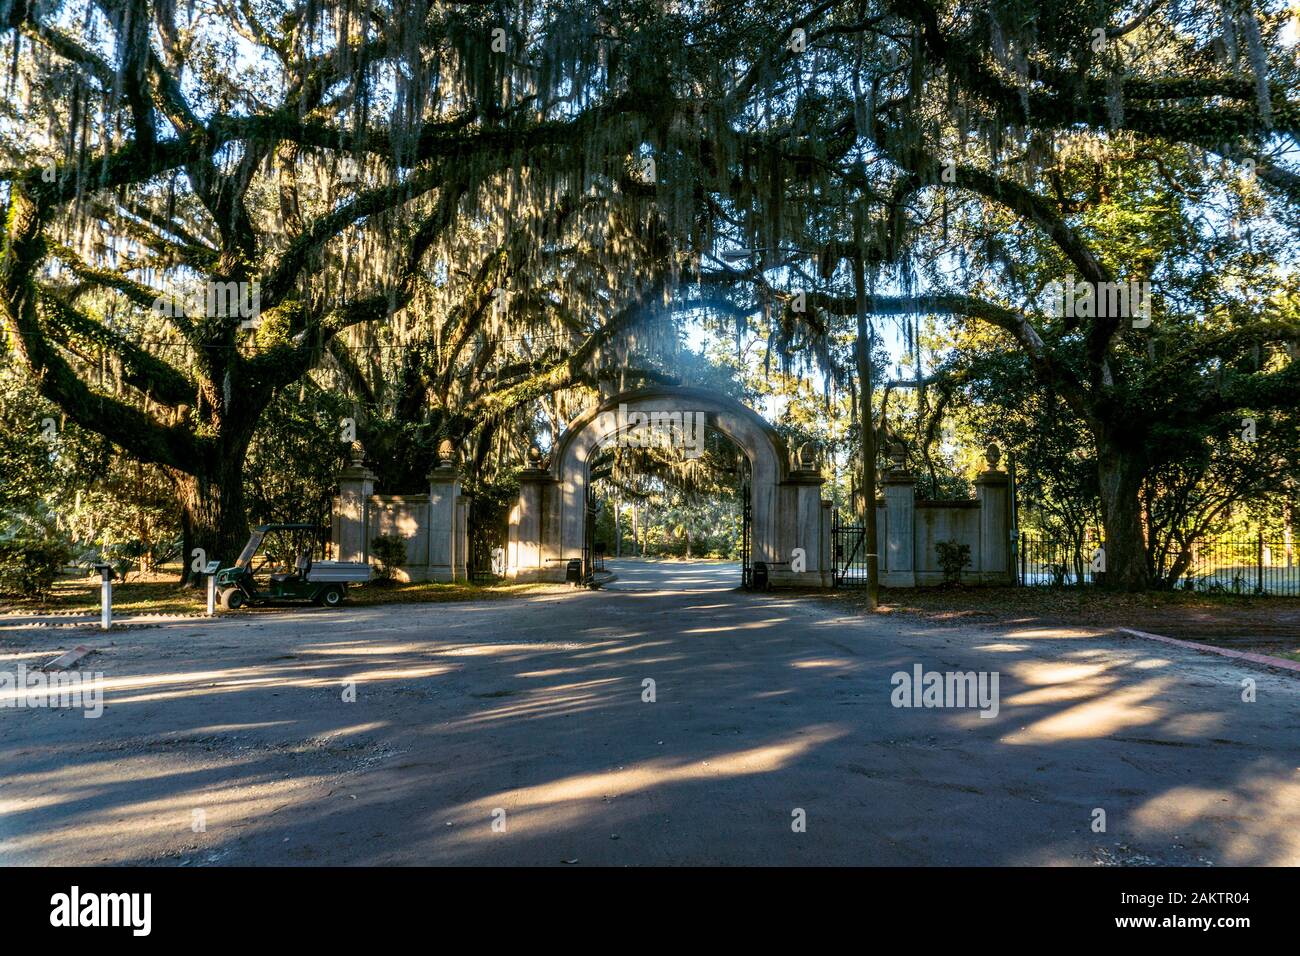 Die lebenden Eichen sind Savannahs Lieblingsbaum, verzaubern Straßen, Parks und Friedhöfe in der ganzen Stadt. Stockfoto